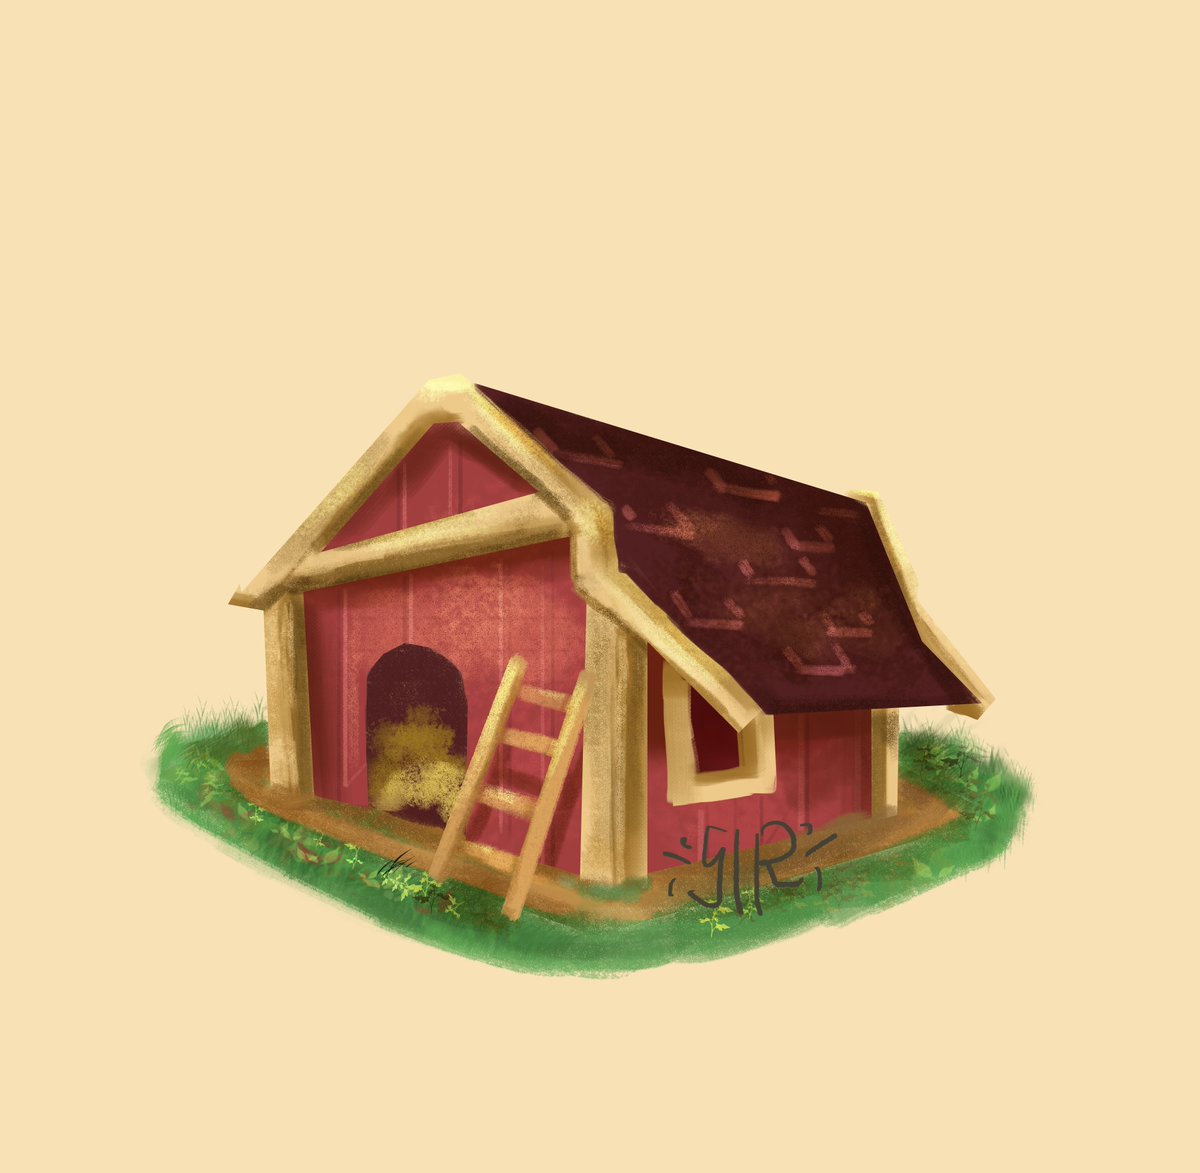 Farmhouse. 
#visualdevelopment #isometric #artidn